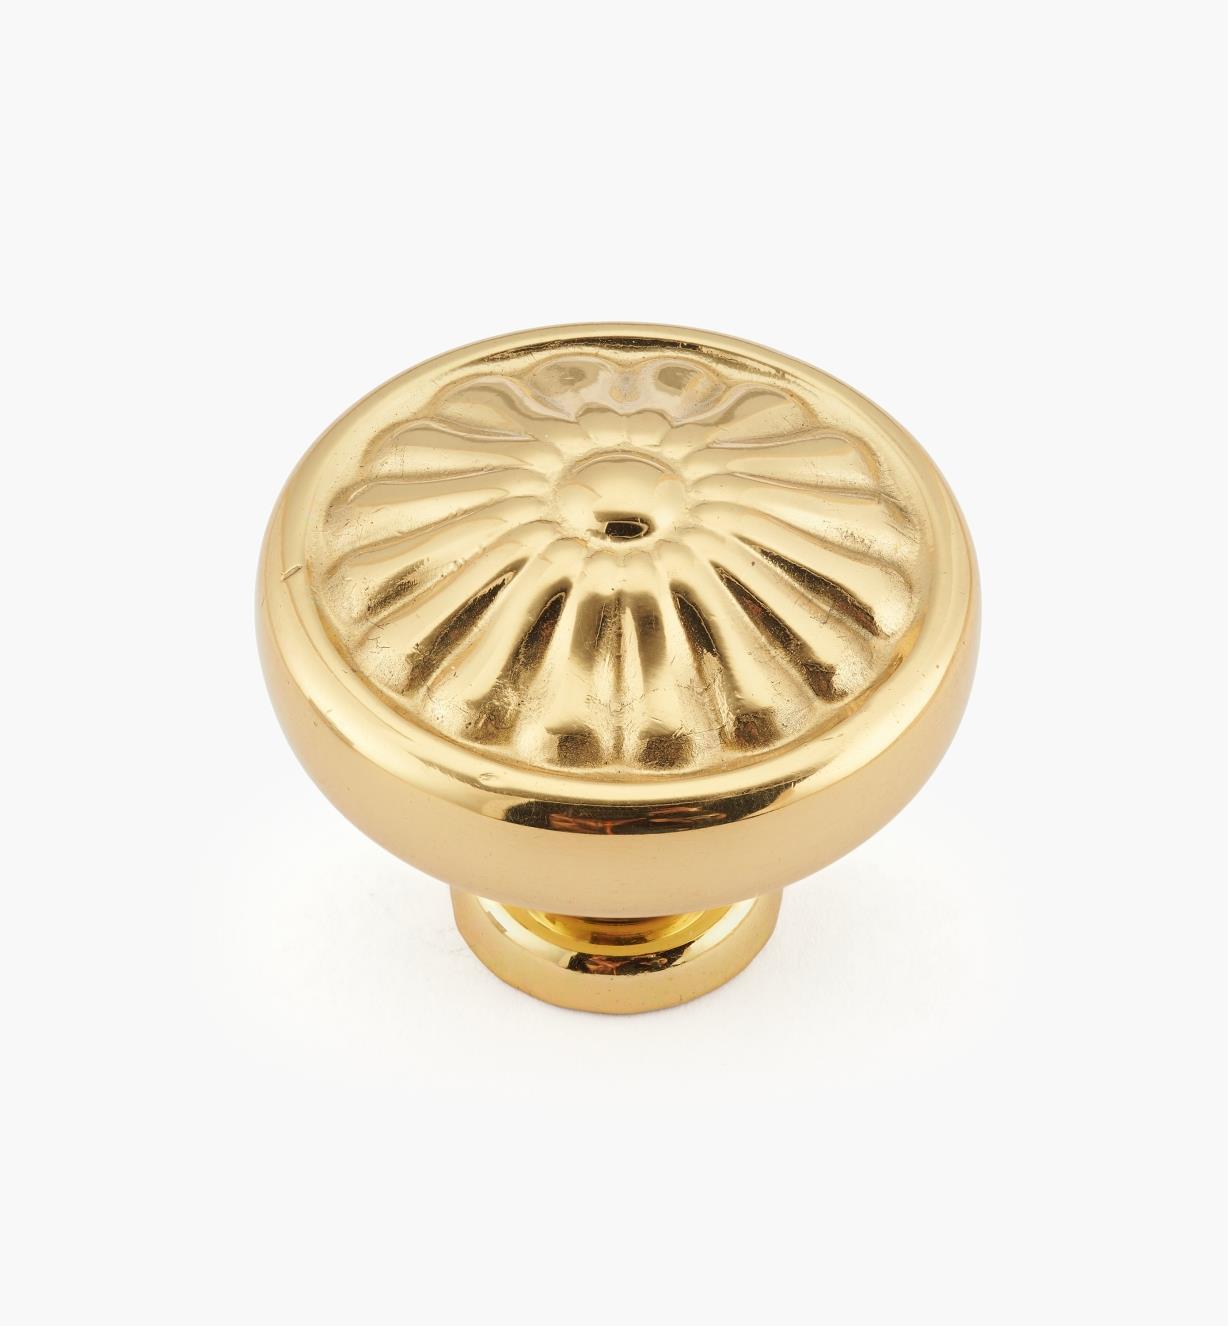 01W4040 - Petalled Knob, Polished Brass